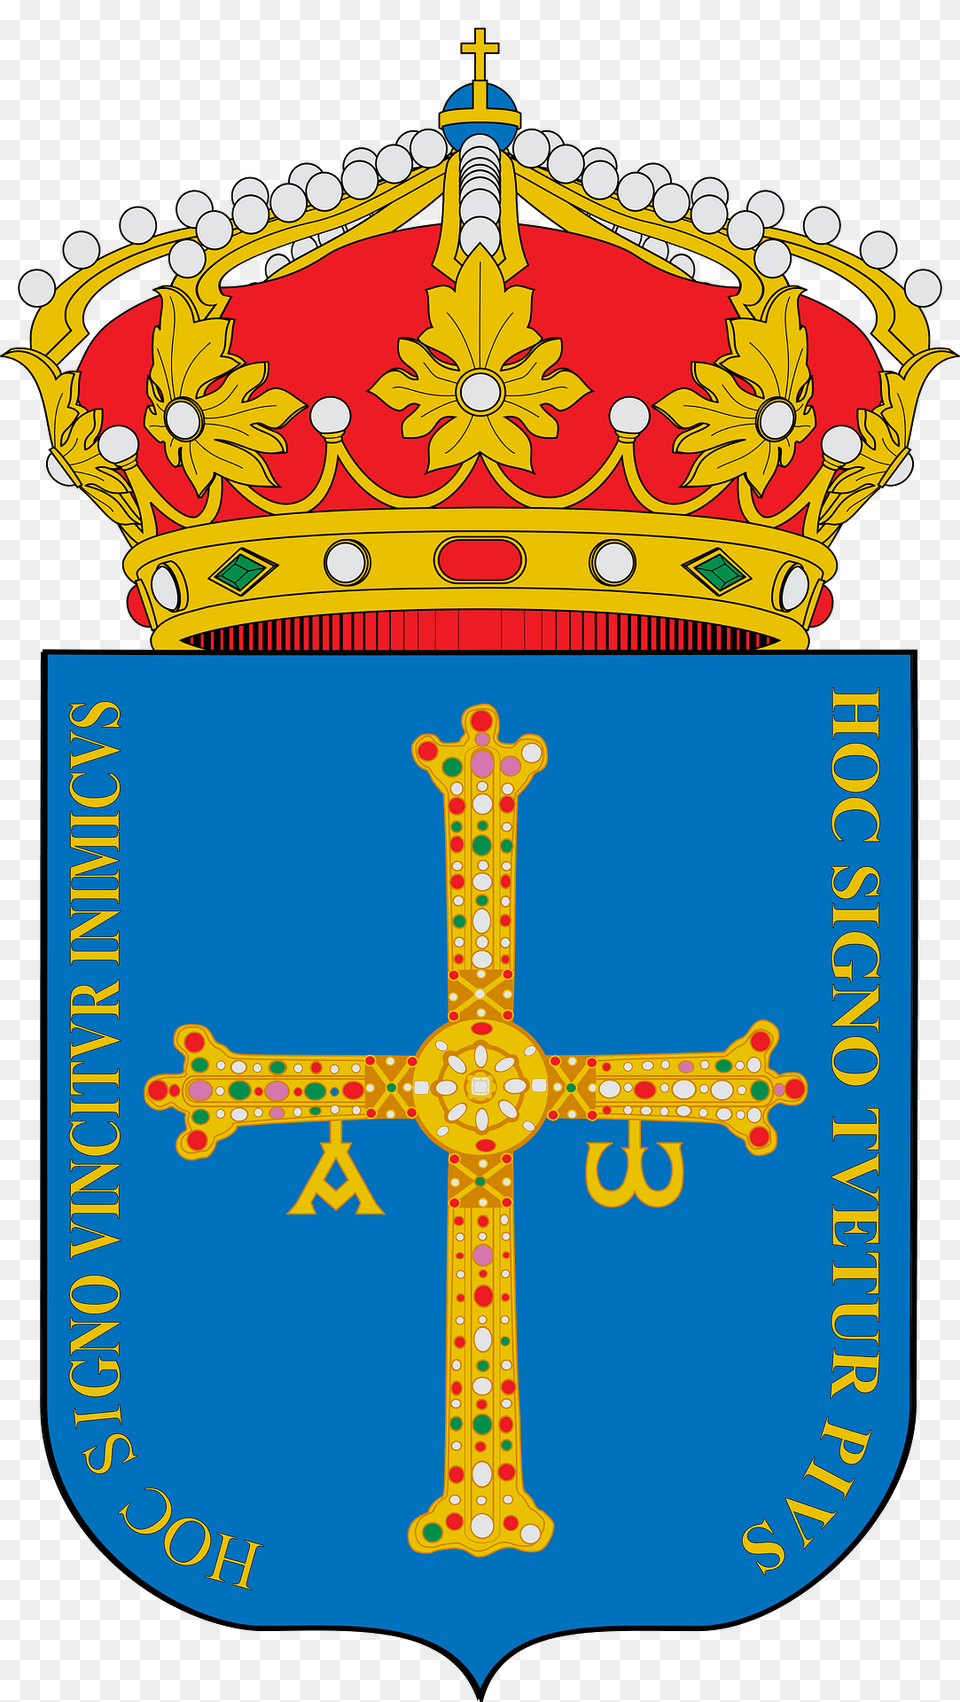 Escudo De Asturias Clipart, Cross, Symbol, Bulldozer, Machine Png Image